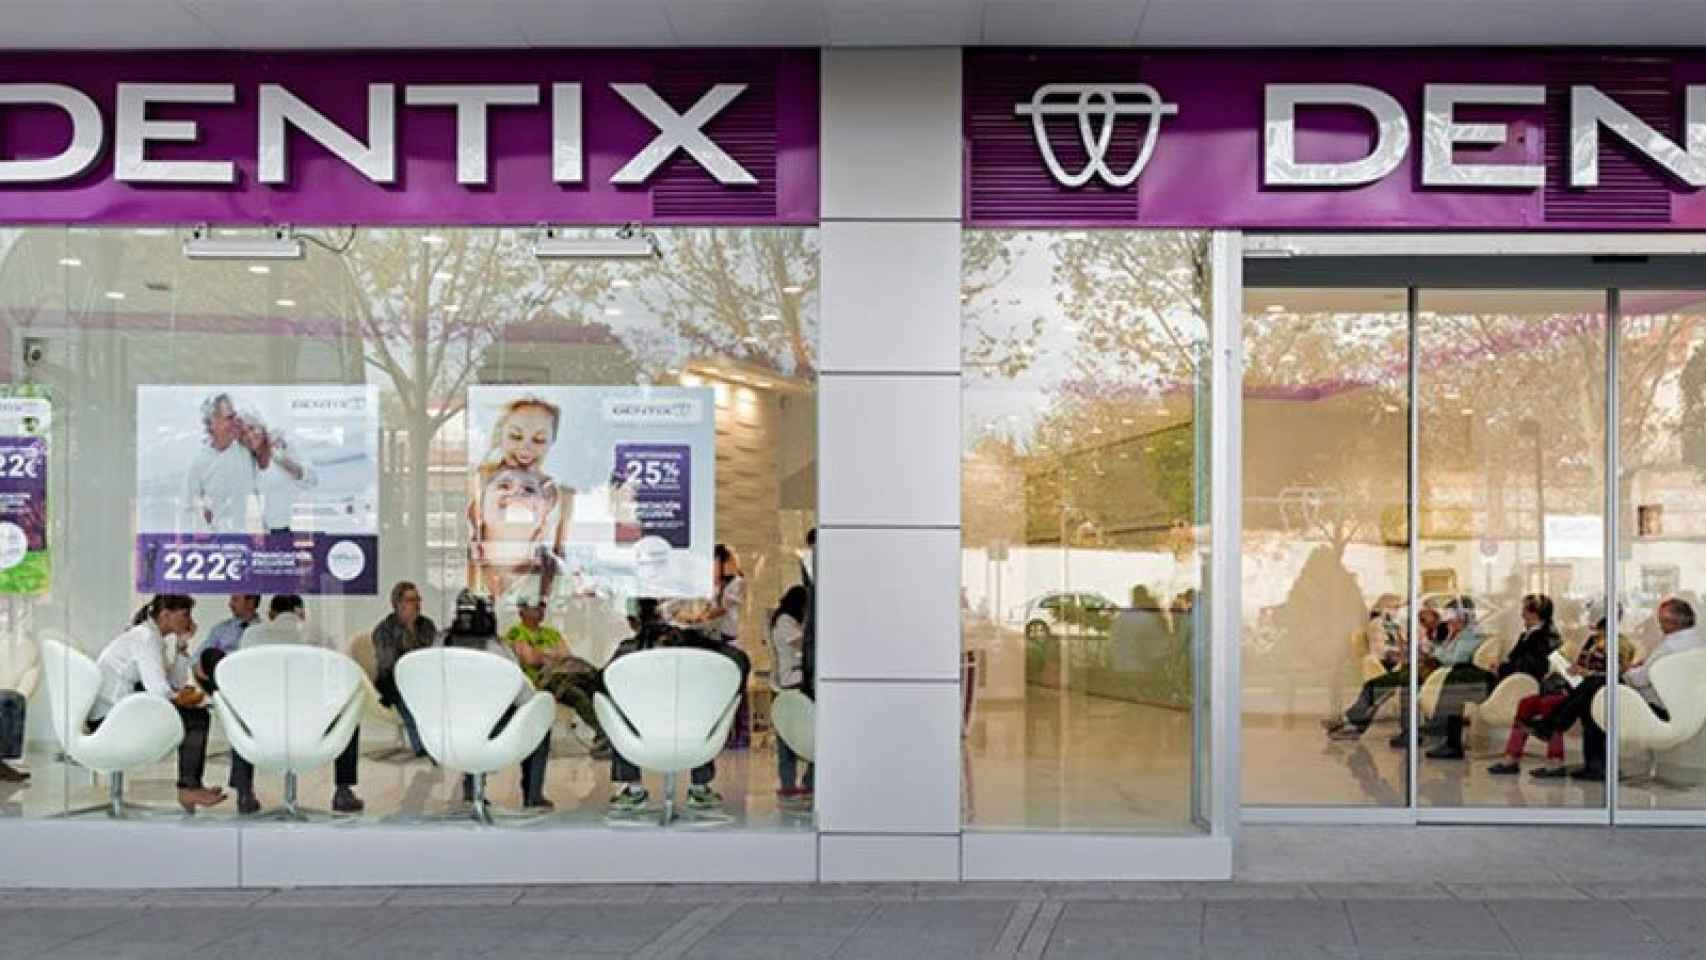 Imagen de uno de los establecimientos de la cadena de clínicas dentales Dentix